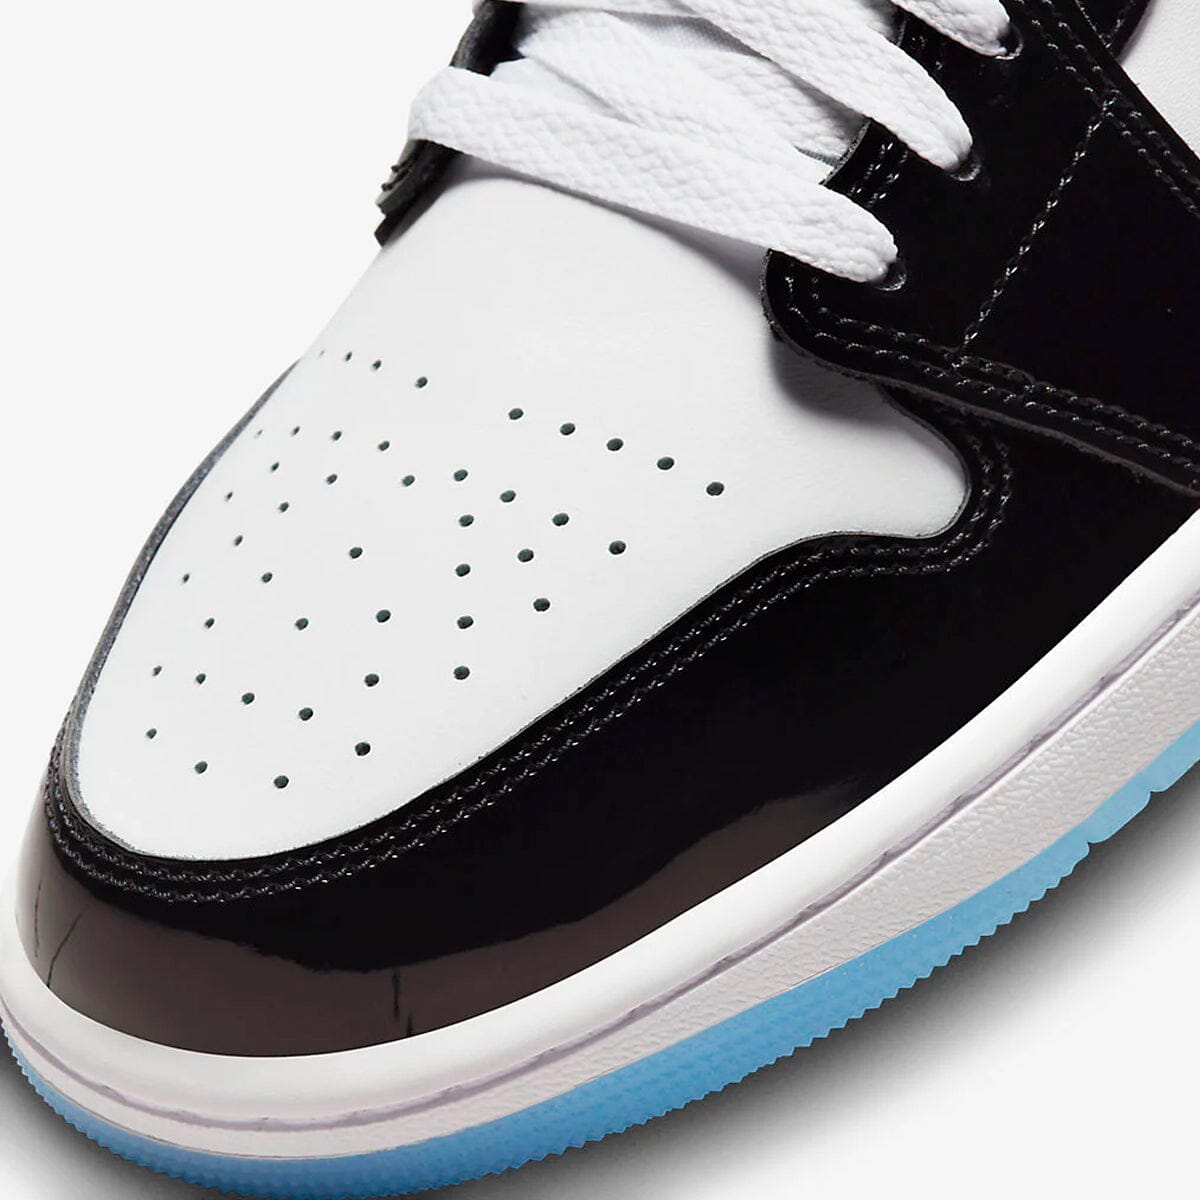 Air Jordan 1 Low Concord Blizz Sneakers 